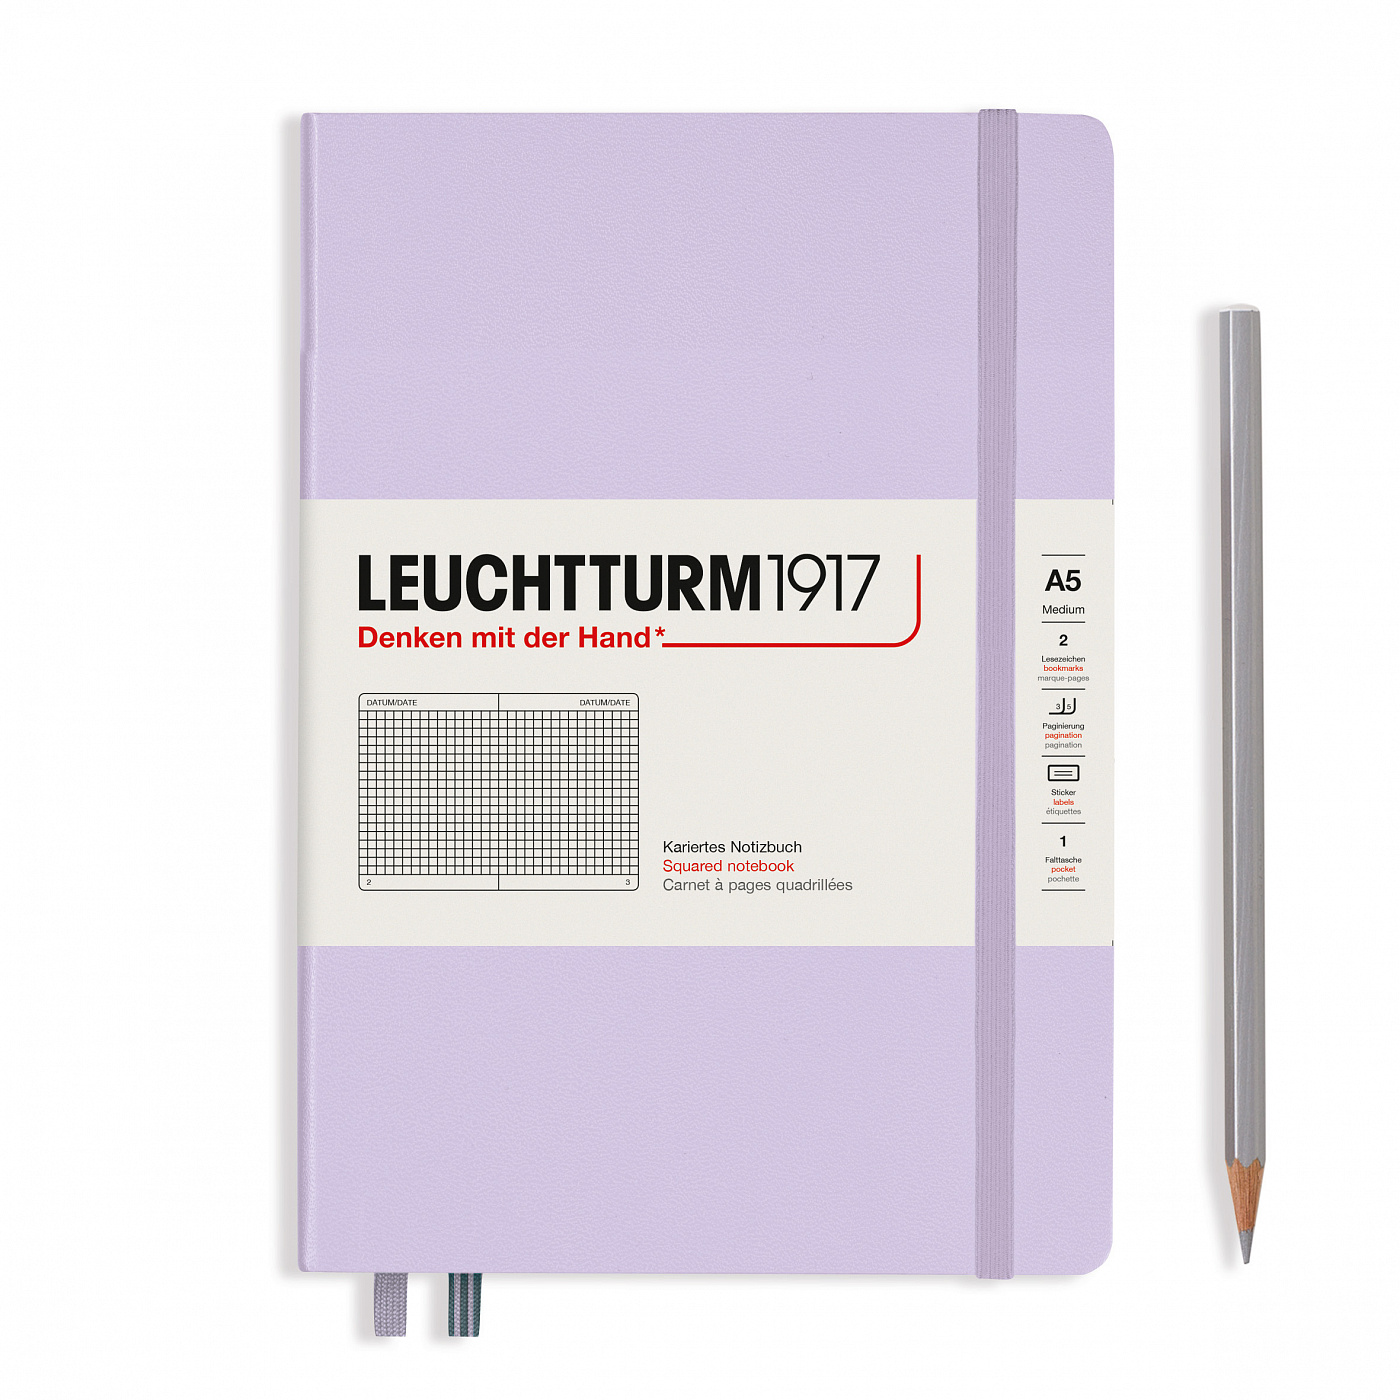 Записная книжка в клетку Leuchtturm A5 251 стр., твёрдая обложка, сиреневый записная книжка а6 24л кл sign сшивка ассорти languo